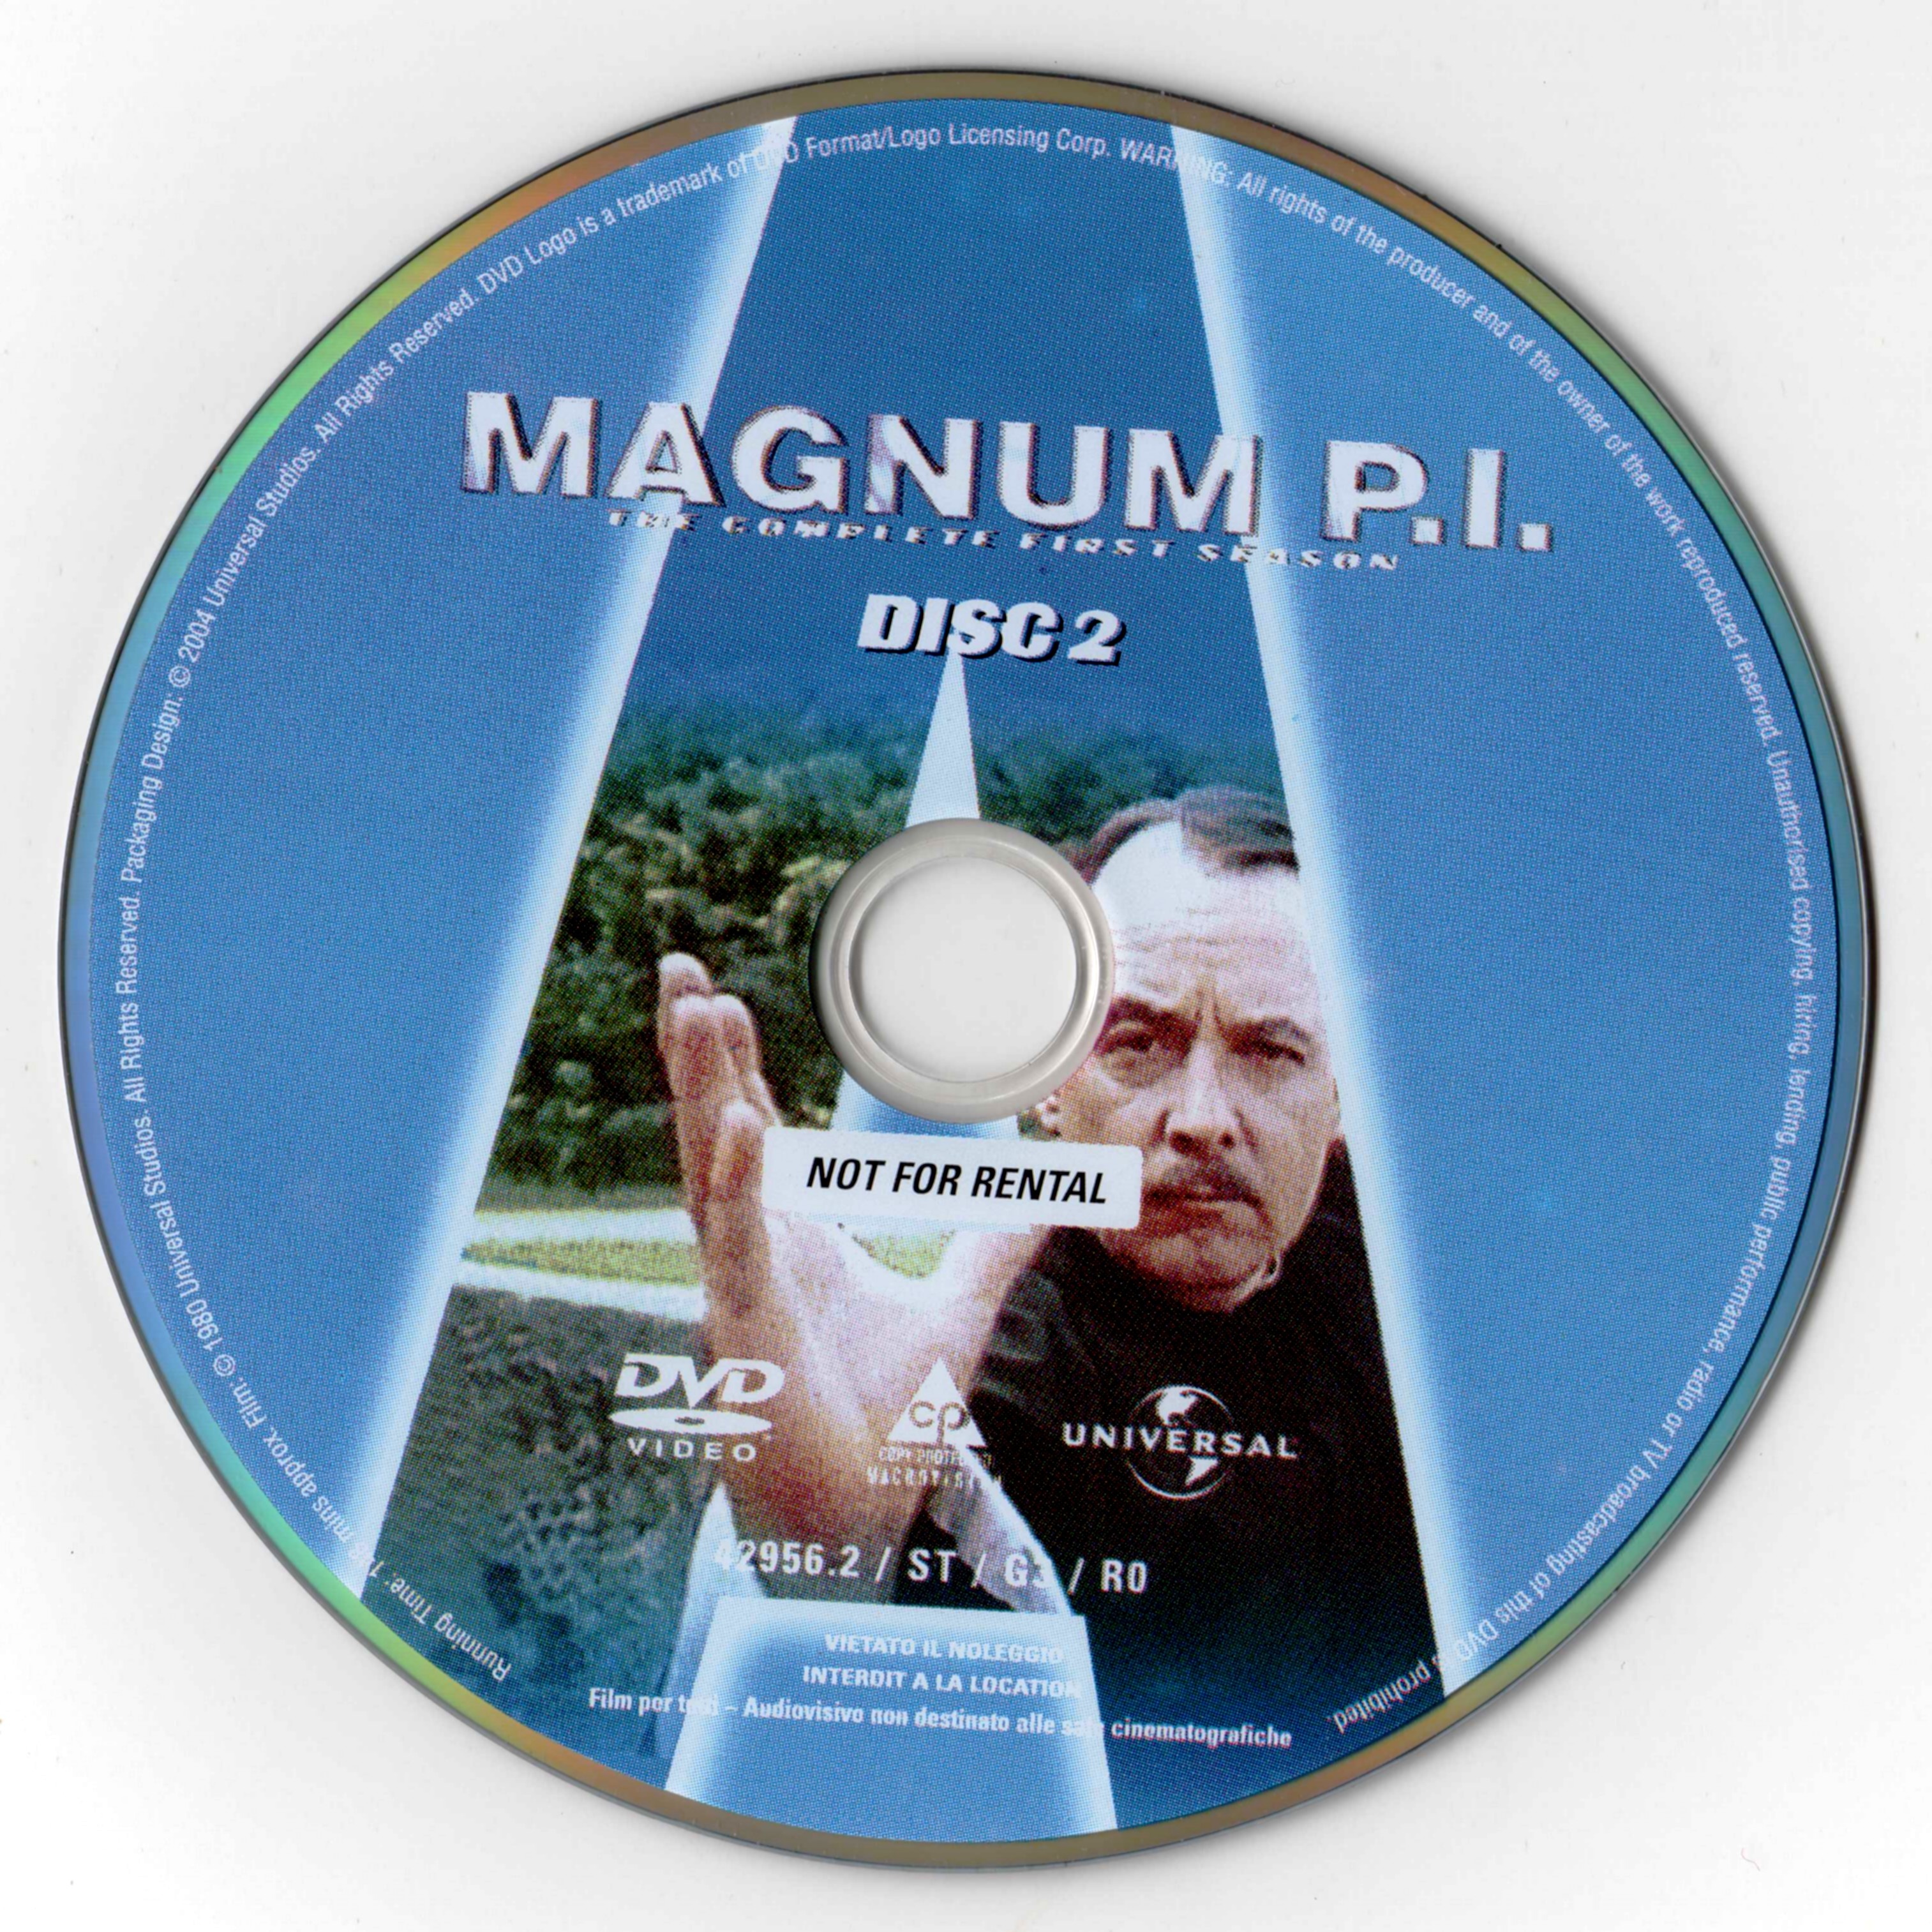 Magnum Saison 1 DISC 2